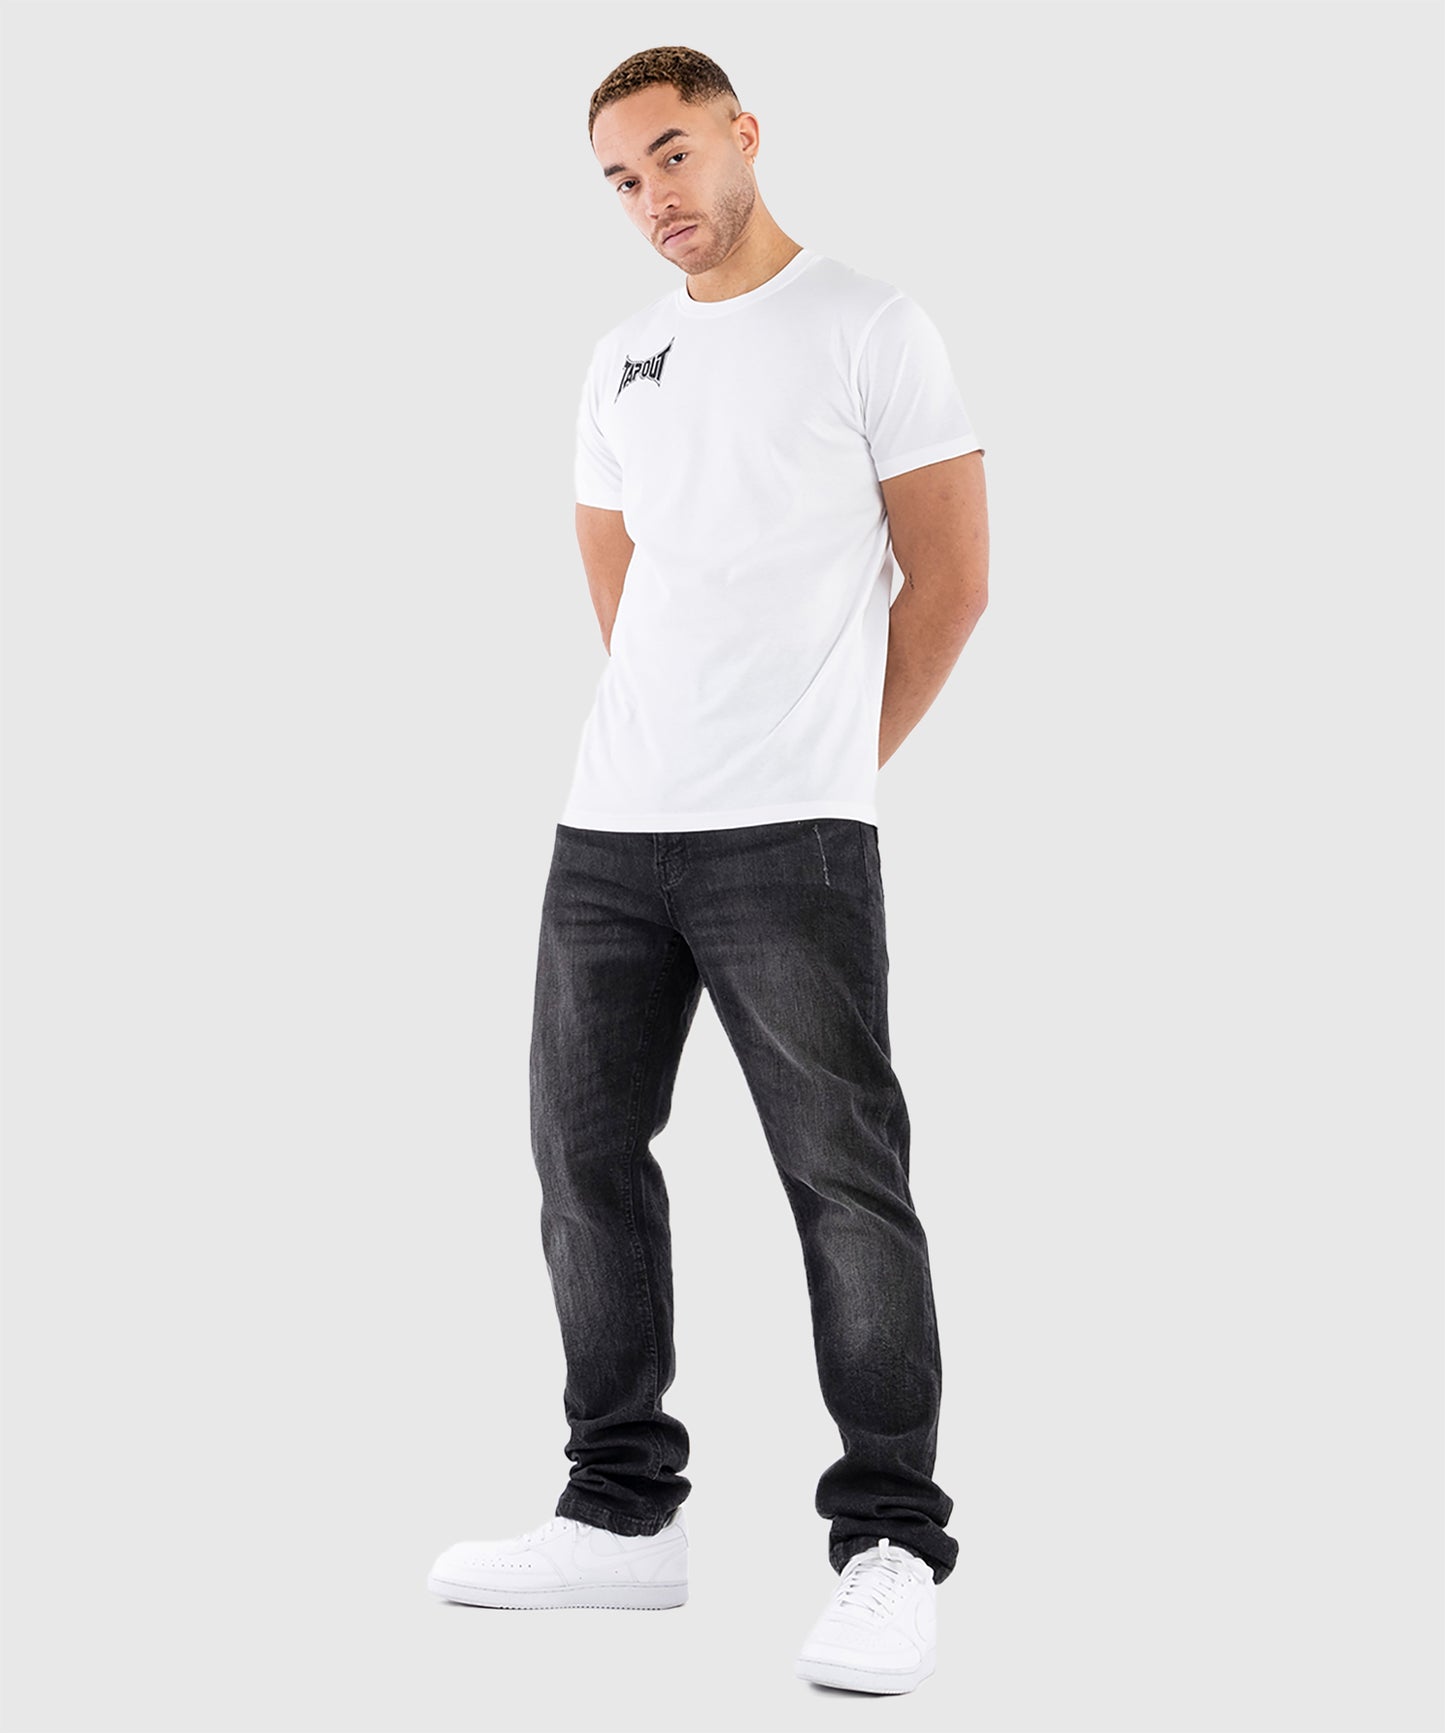 T-Shirt Tapout Octogon - Blanc/Noir